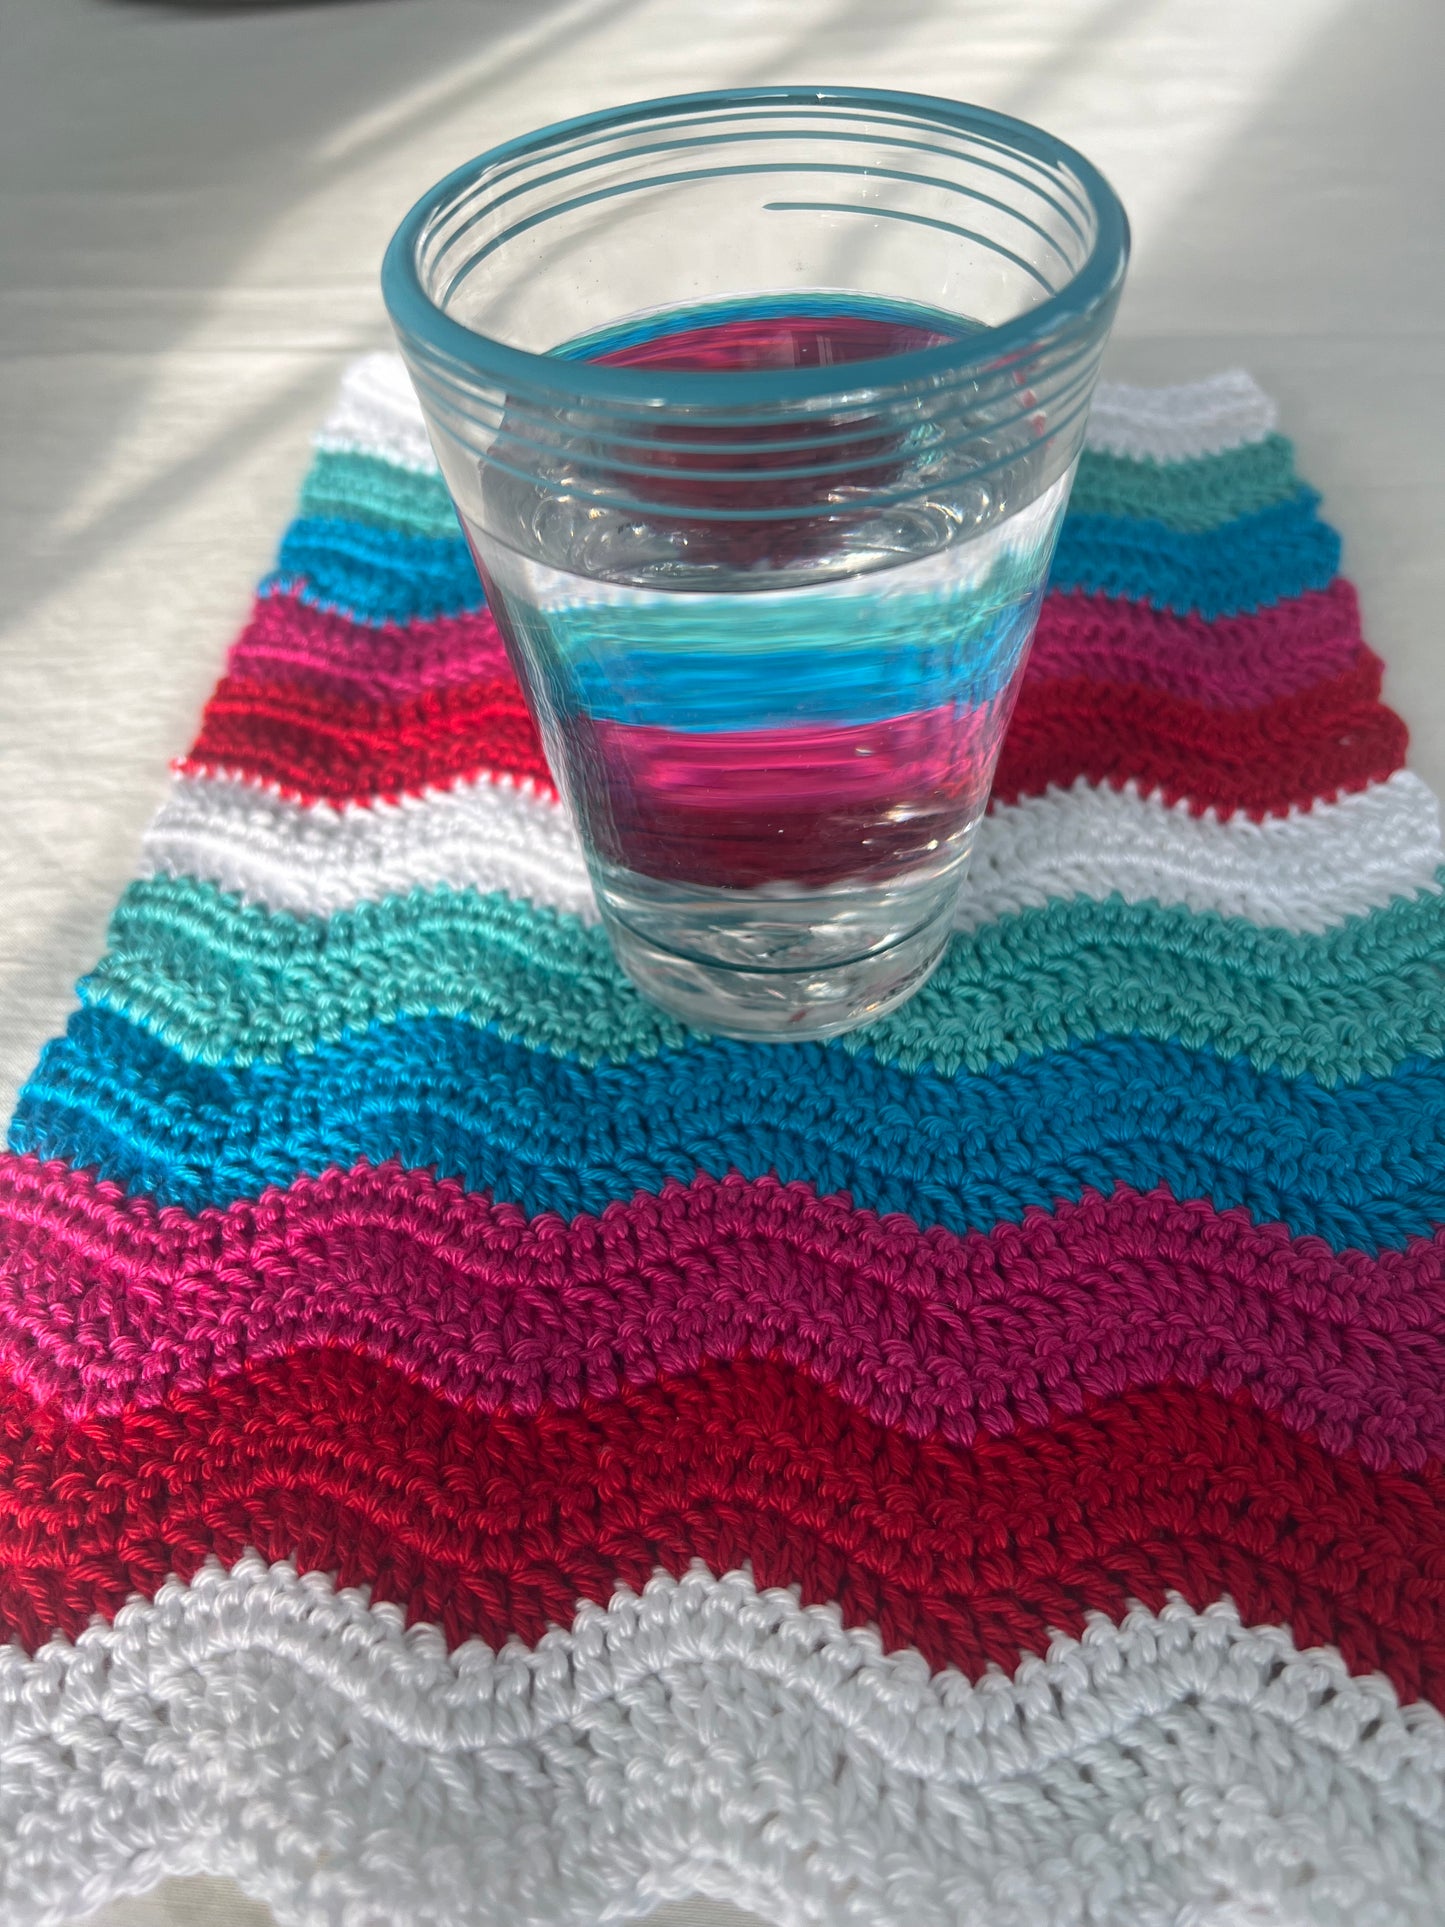 Spring Cheer ripple pattern crochet mat.